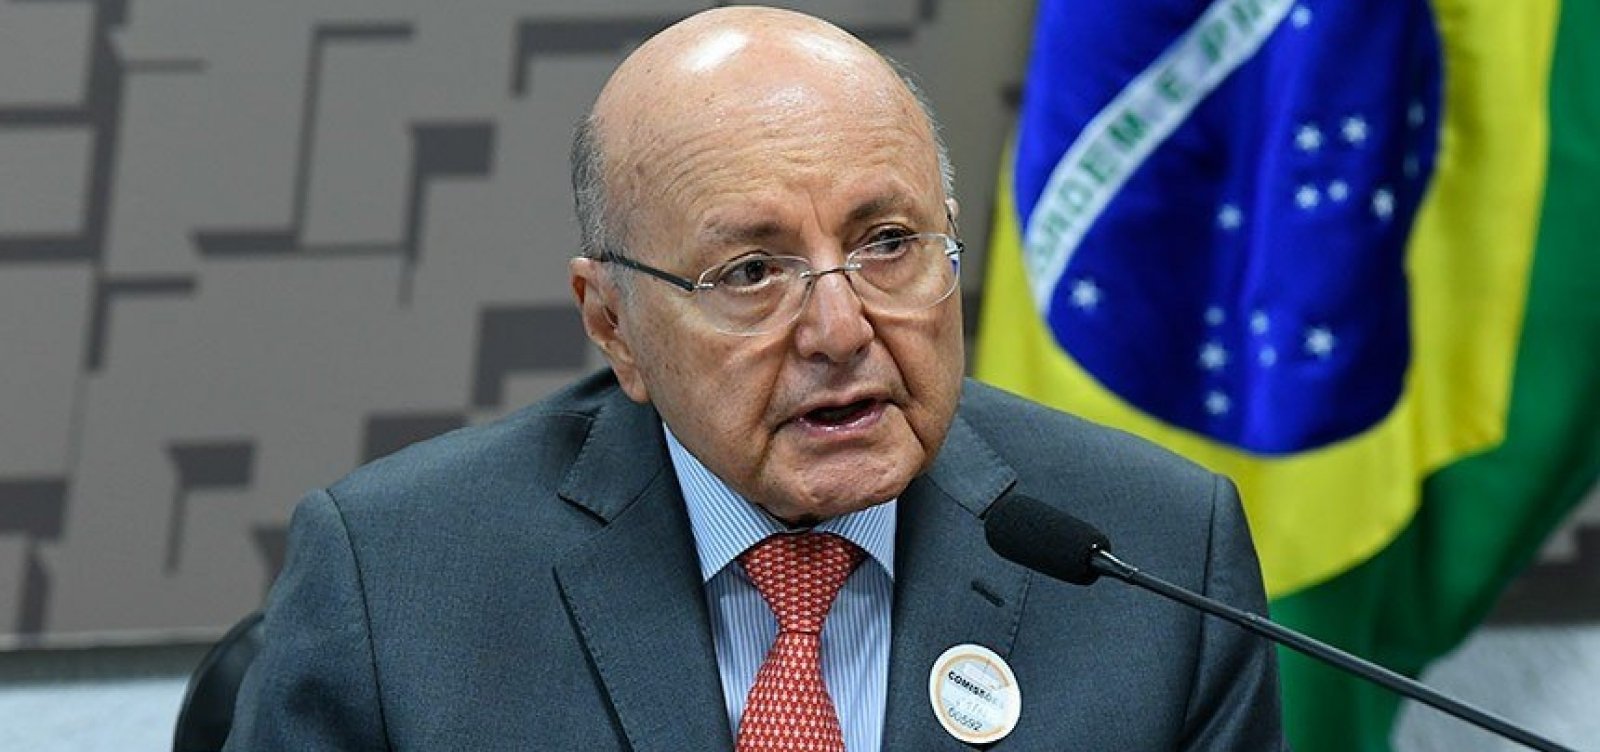 Querer abandonar medidas de contenção é estupidez de Bolsonaro, diz ex-ministro Maílson da Nóbrega